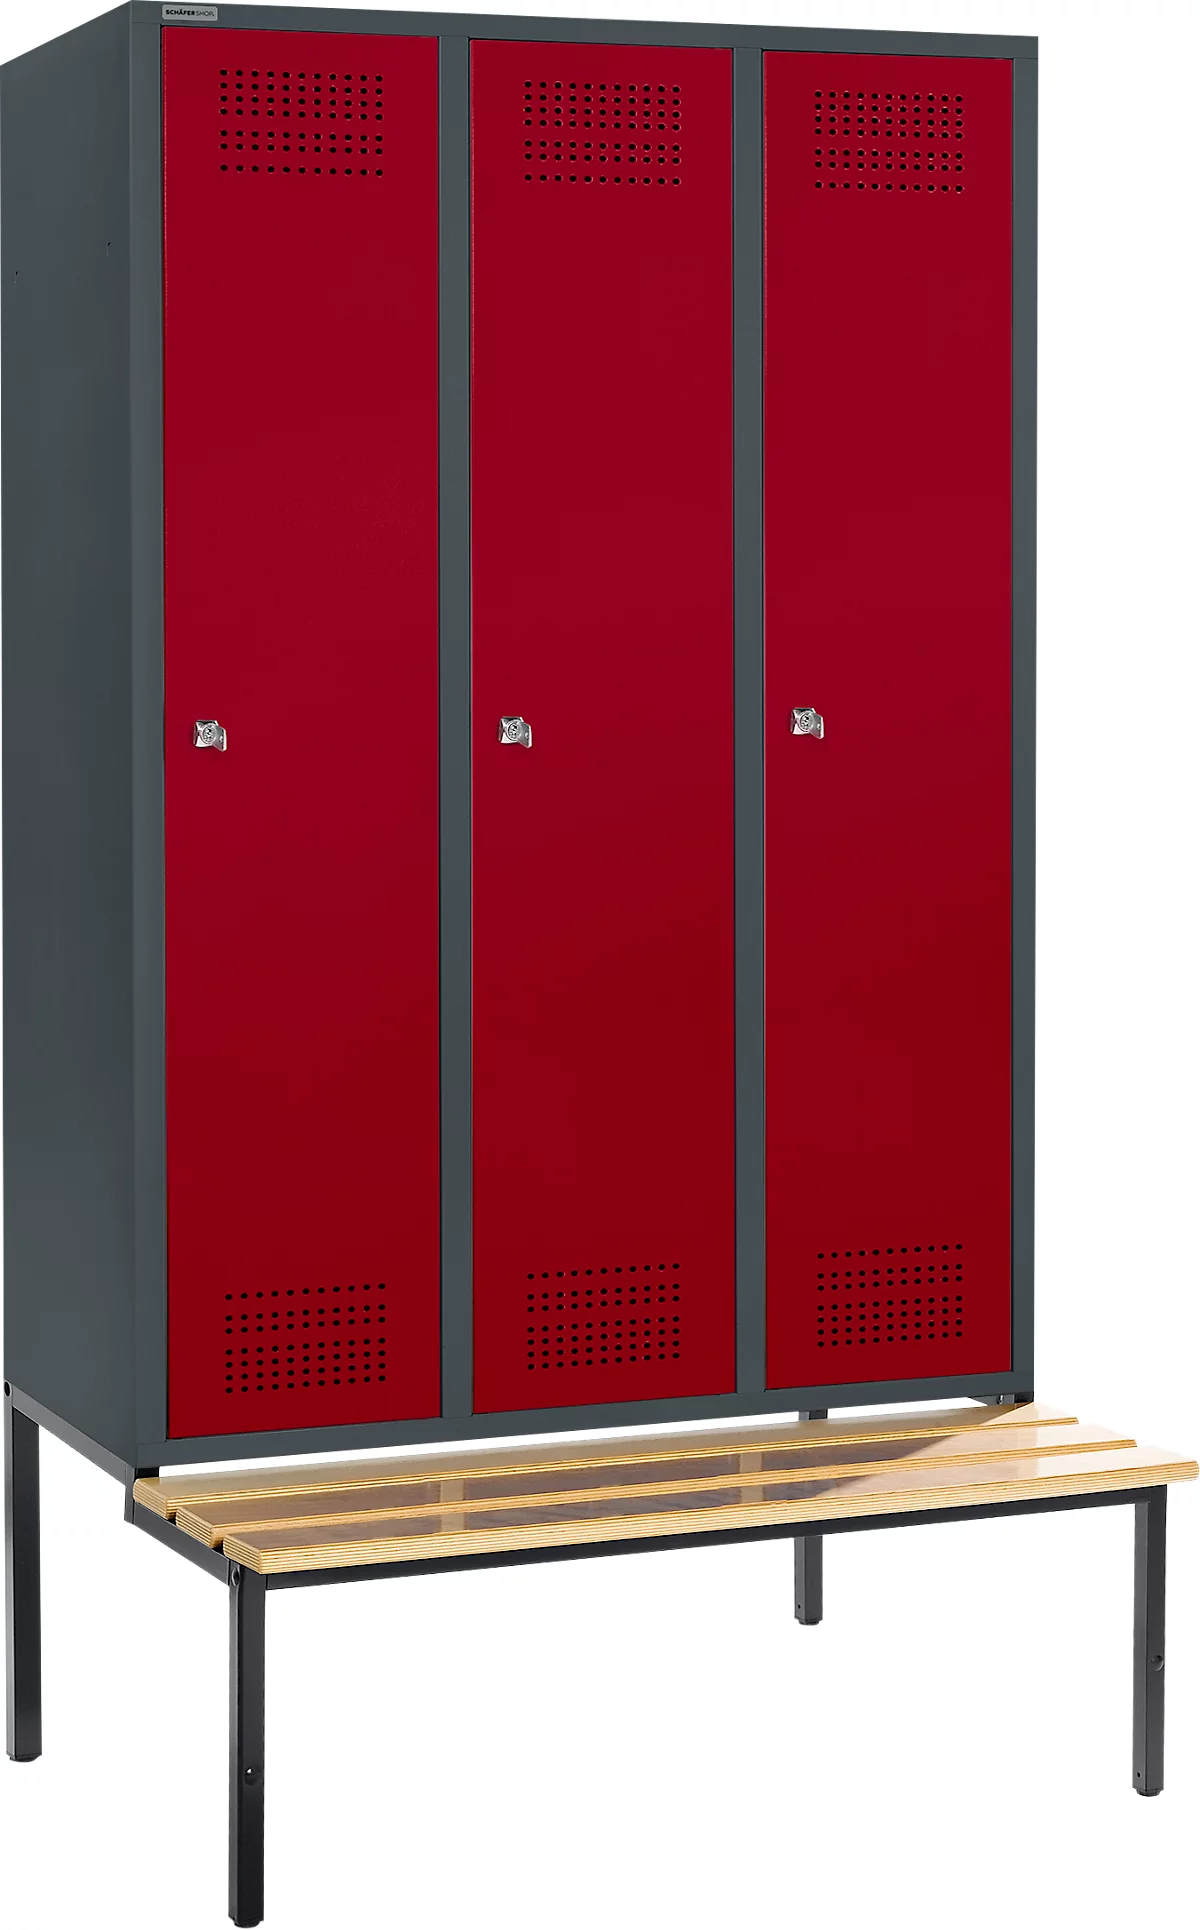 Schäfer Shop Genius Taquilla con banco, 3 compartimentos, anchura compartimento 400 mm, cerradura de cilindro, antracita/rojo rubí